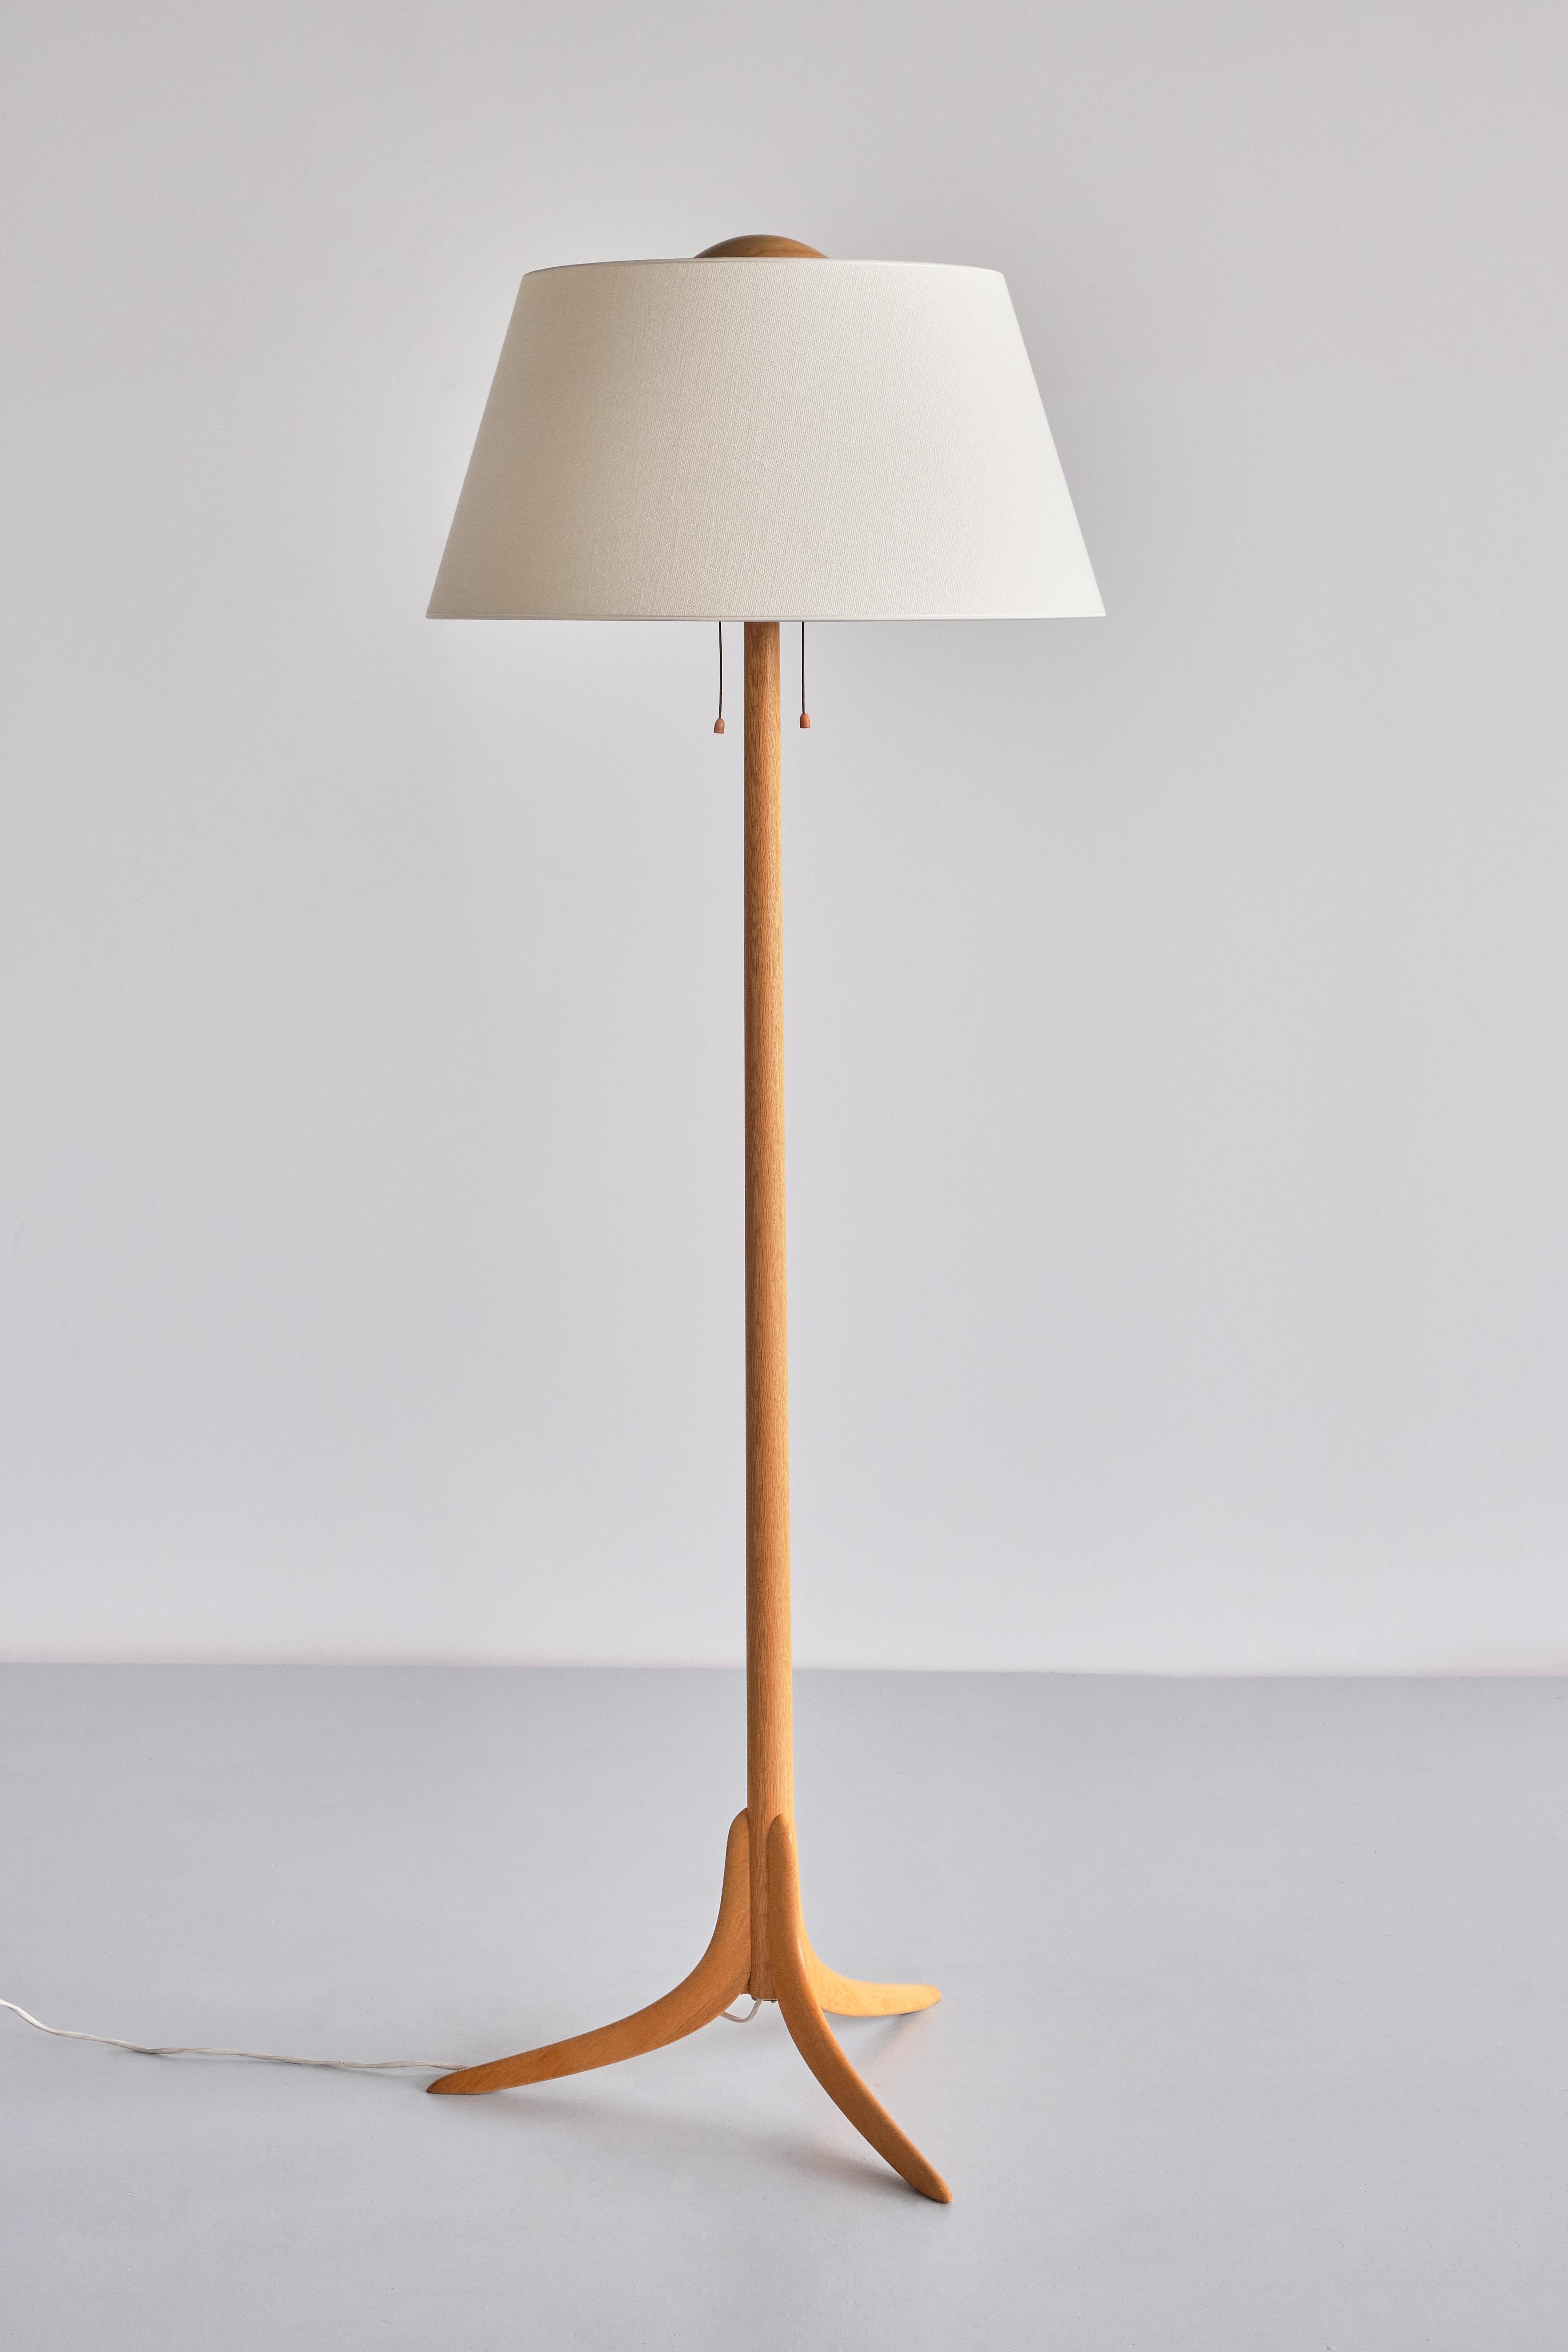 Swedish Modern Three Legged Floor Lamp in Oak, Svensk Hemslöjd, 1950s For Sale 7